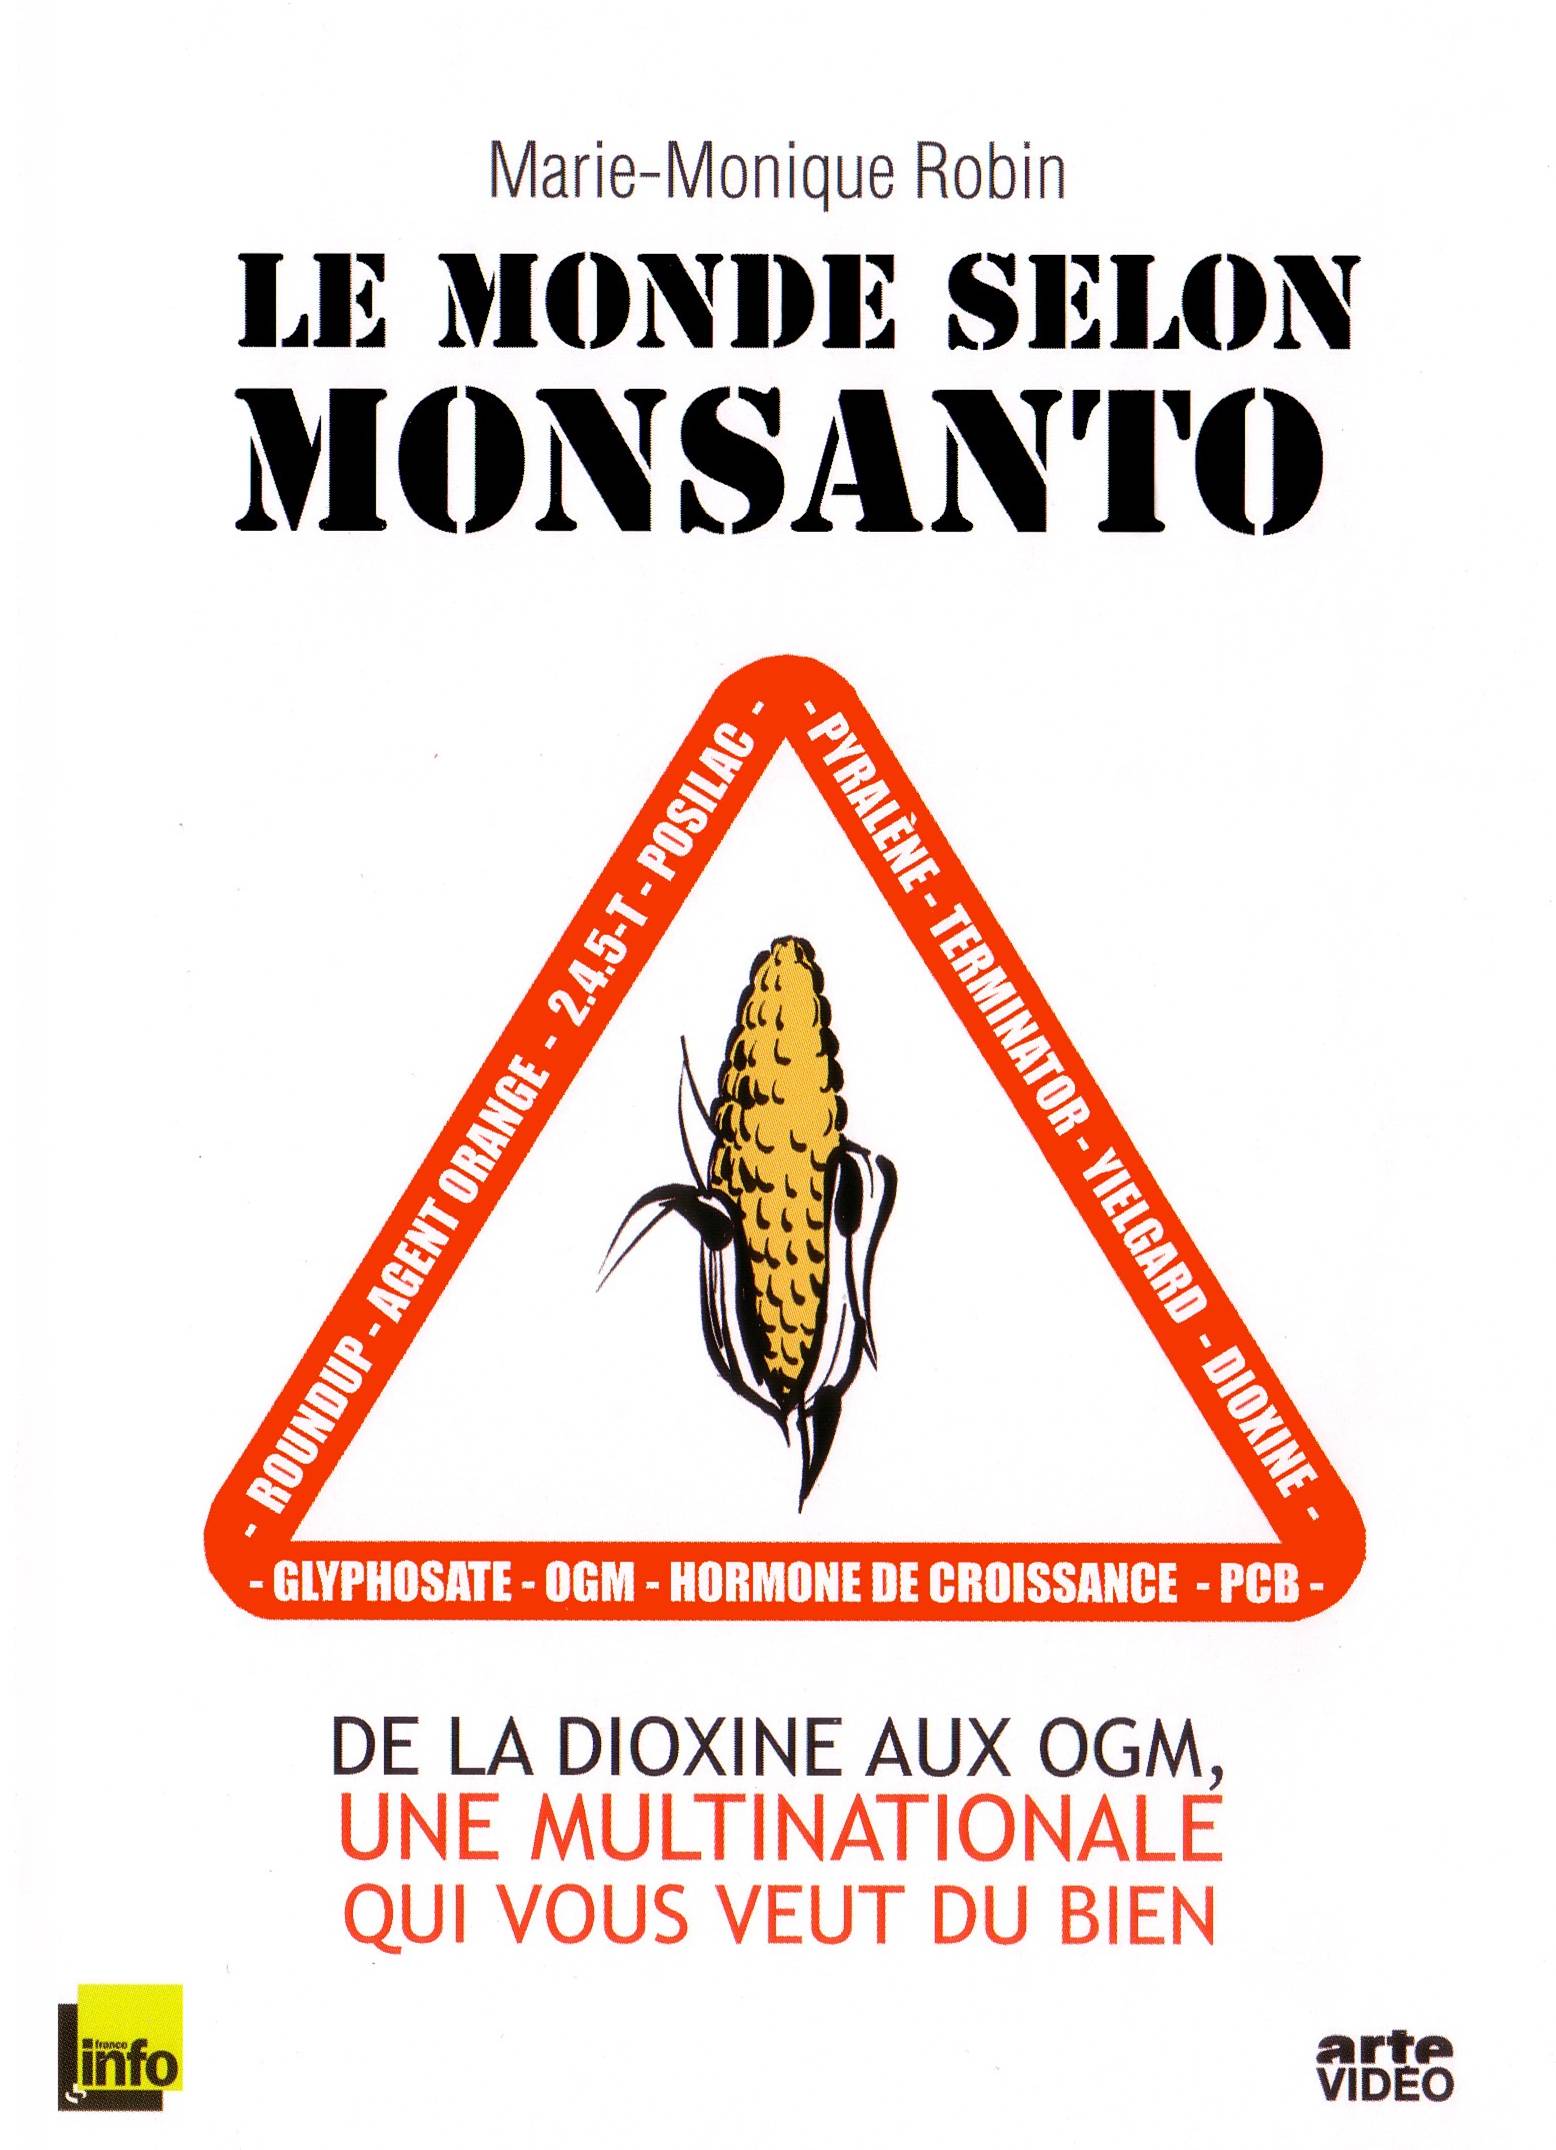 Capa do DVD do filme “O mundo segundo a Monsanto” (Divulgação)